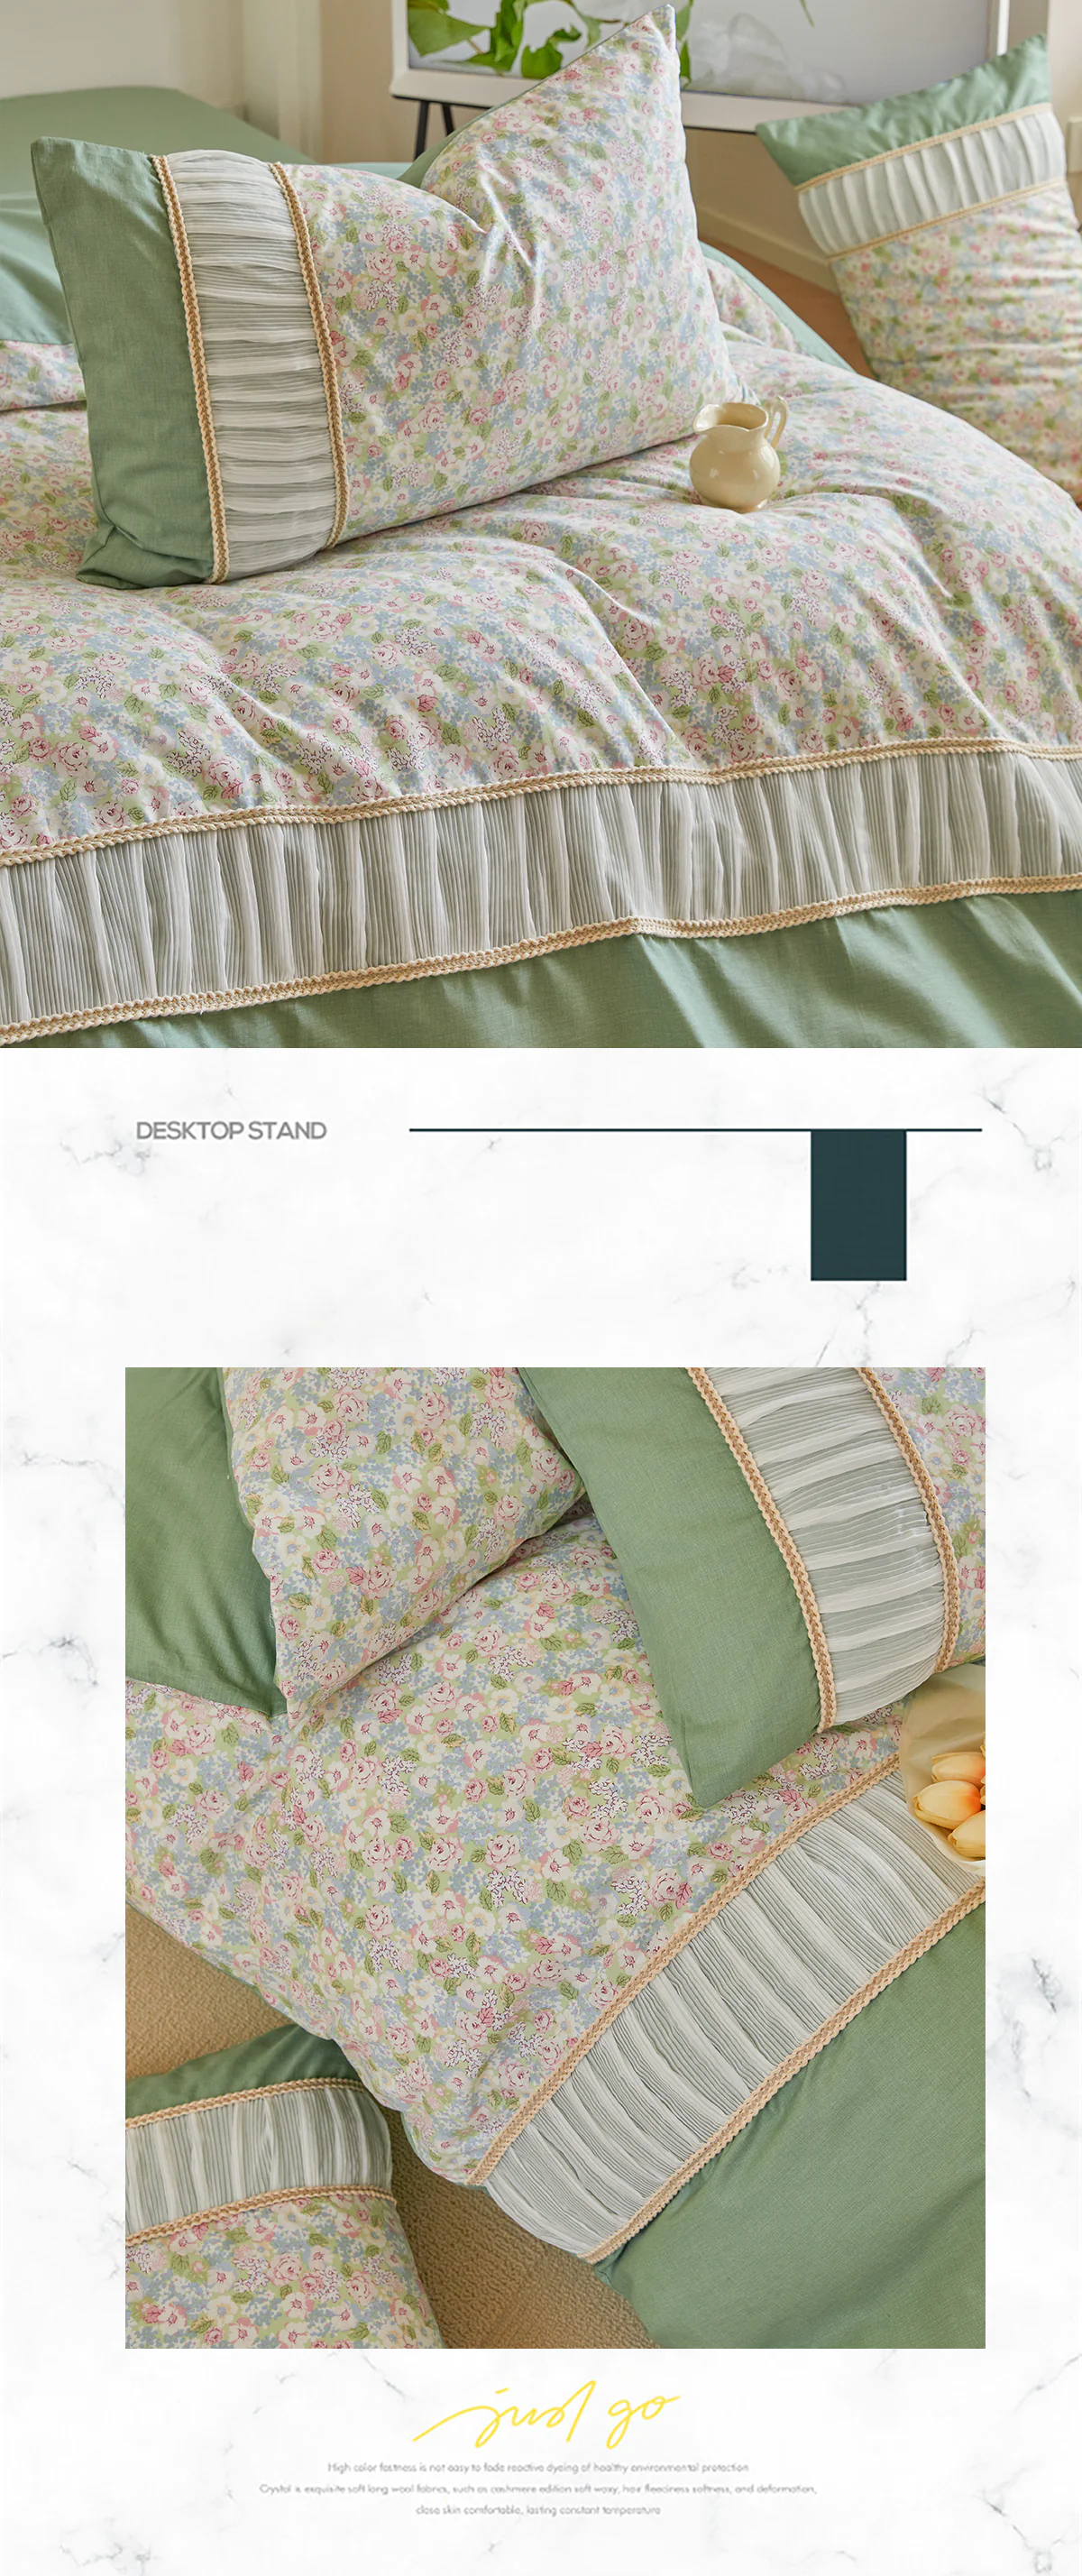 Retro-Princess-Style-100-Cotton-Floral-Duvet-Cover-Bedding-Set19